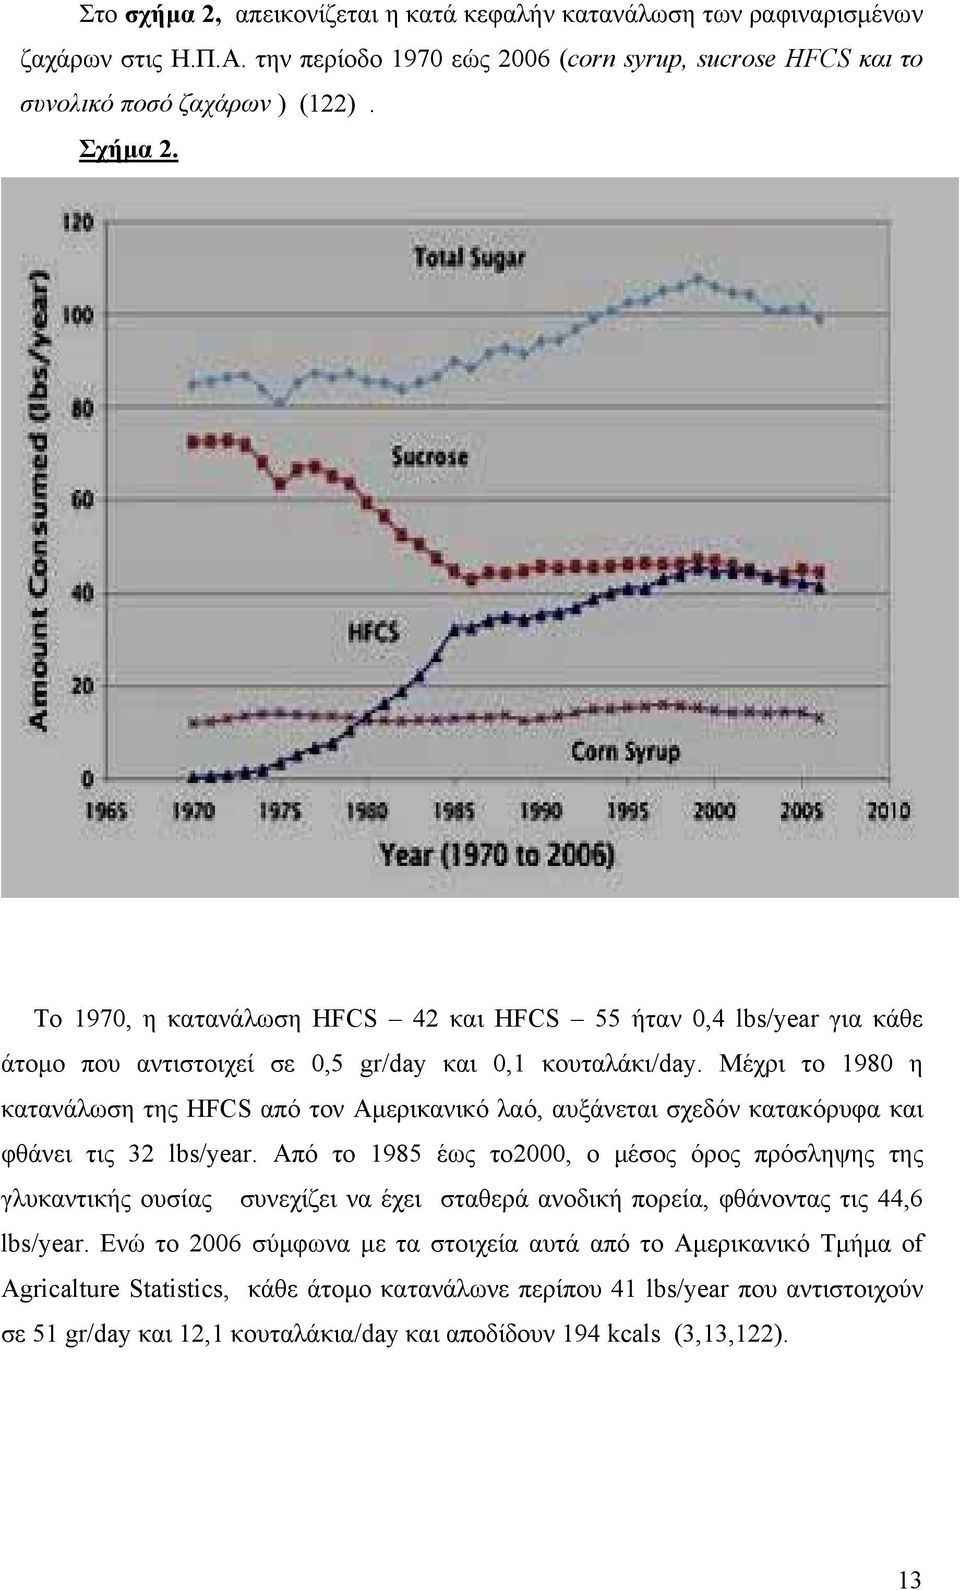 Μέχρι το 1980 η κατανάλωση της HFCS από τον Αµερικανικό λαό, αυξάνεται σχεδόν κατακόρυφα και φθάνει τις 32 lbs/year.